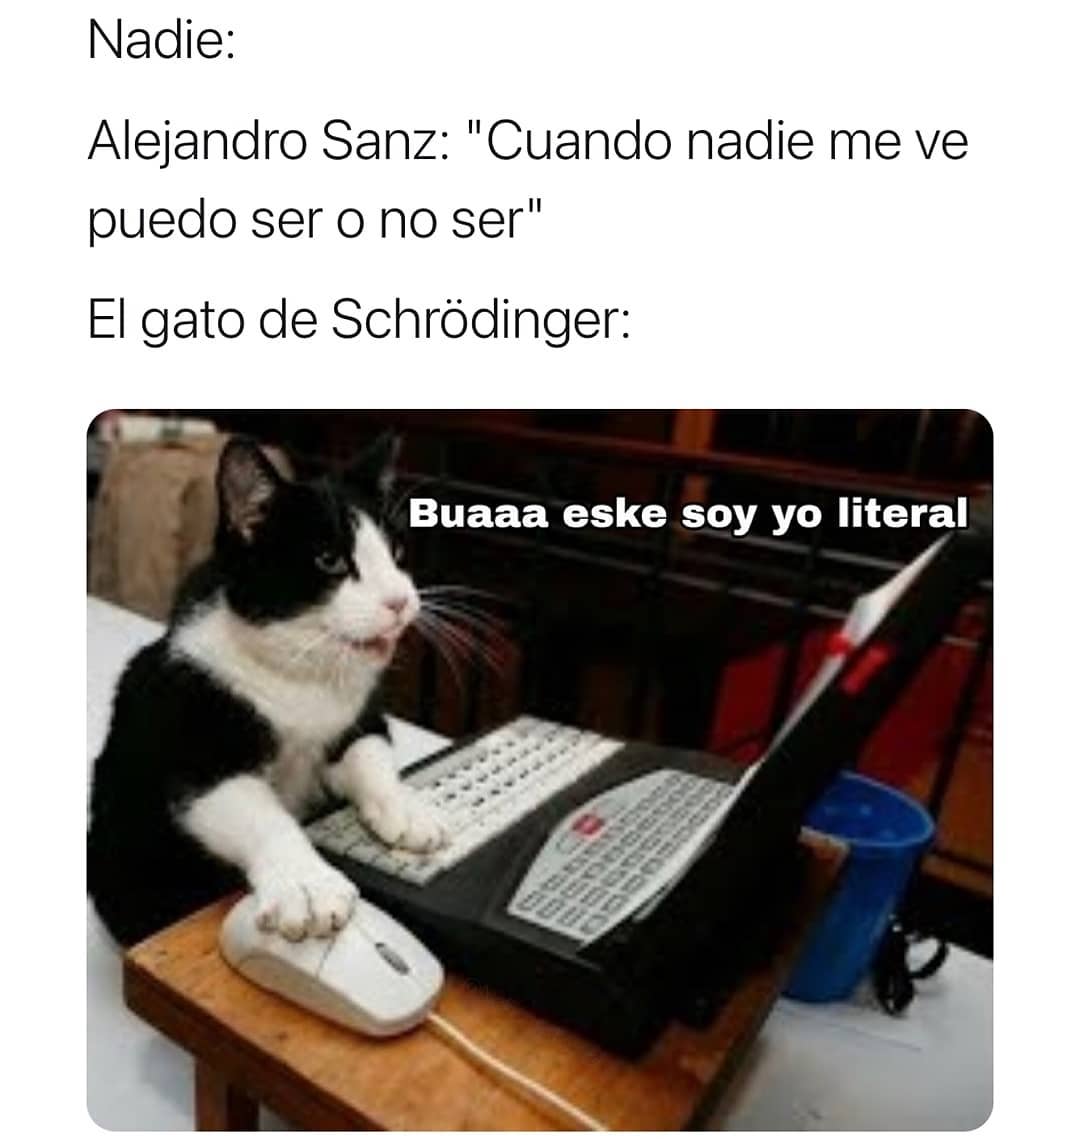 Nadie: Alejandro Sanz: "Cuando nadie me ve puedo ser o no ser" El gato de Schrôdinger: Buaaa eske soy yo literal.